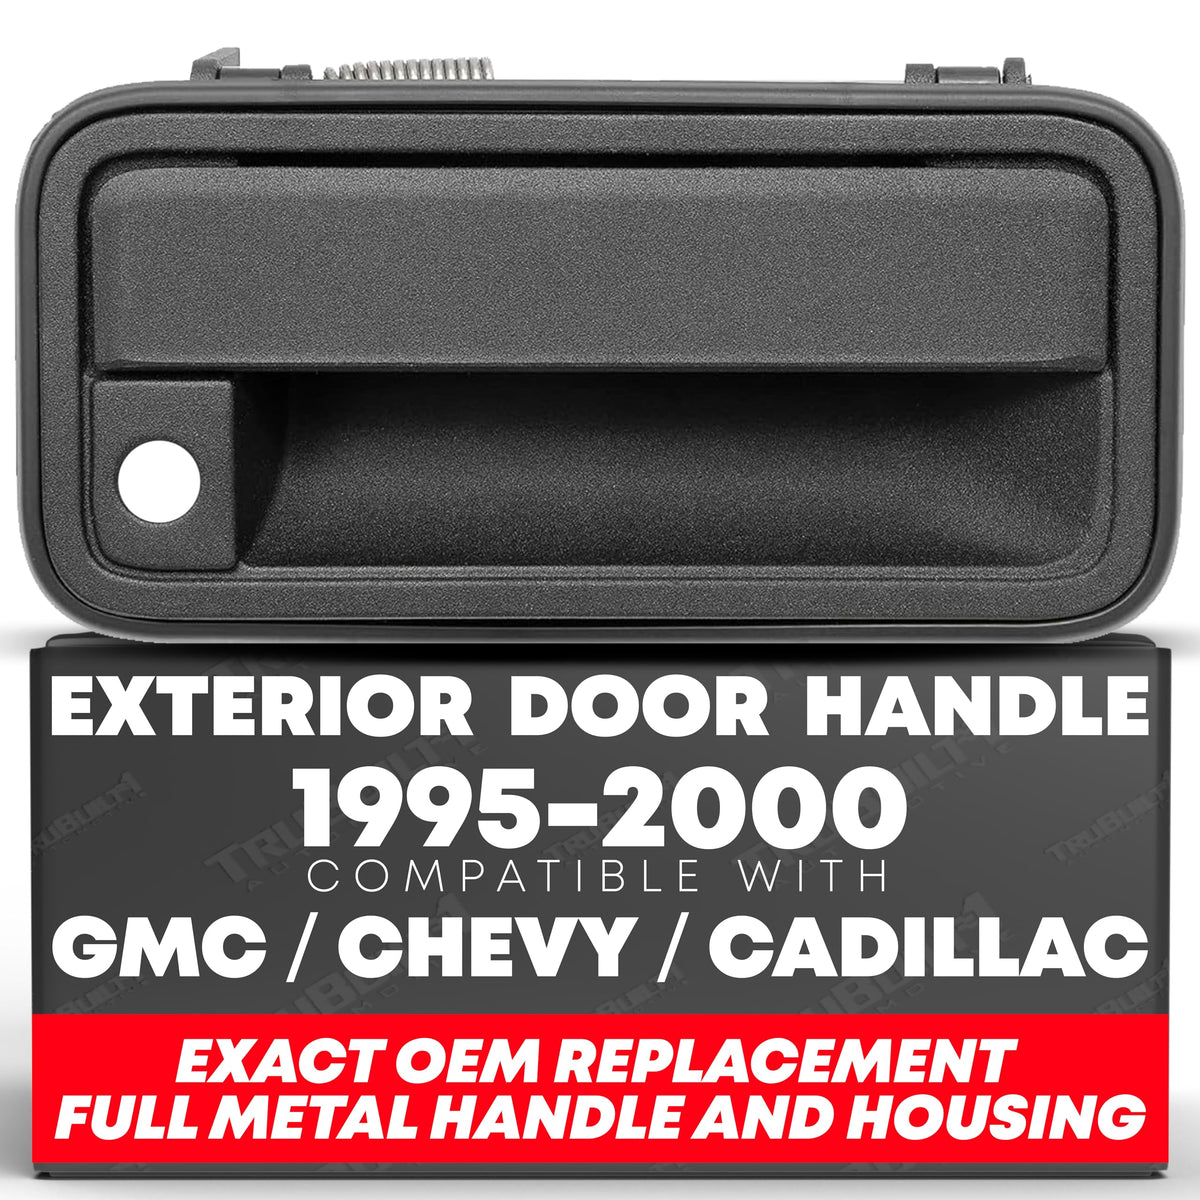 Exterior Rigth Door Handle - ALL-Metal | Compatible with 1988-2001 Chevy K1500 K2500 K3500 C1500 C2500 C3500, GMC C/K 1500 2500 3500 Pickup Suburban, Tahoe, Yukon, Cadillac, 15742230, 77073